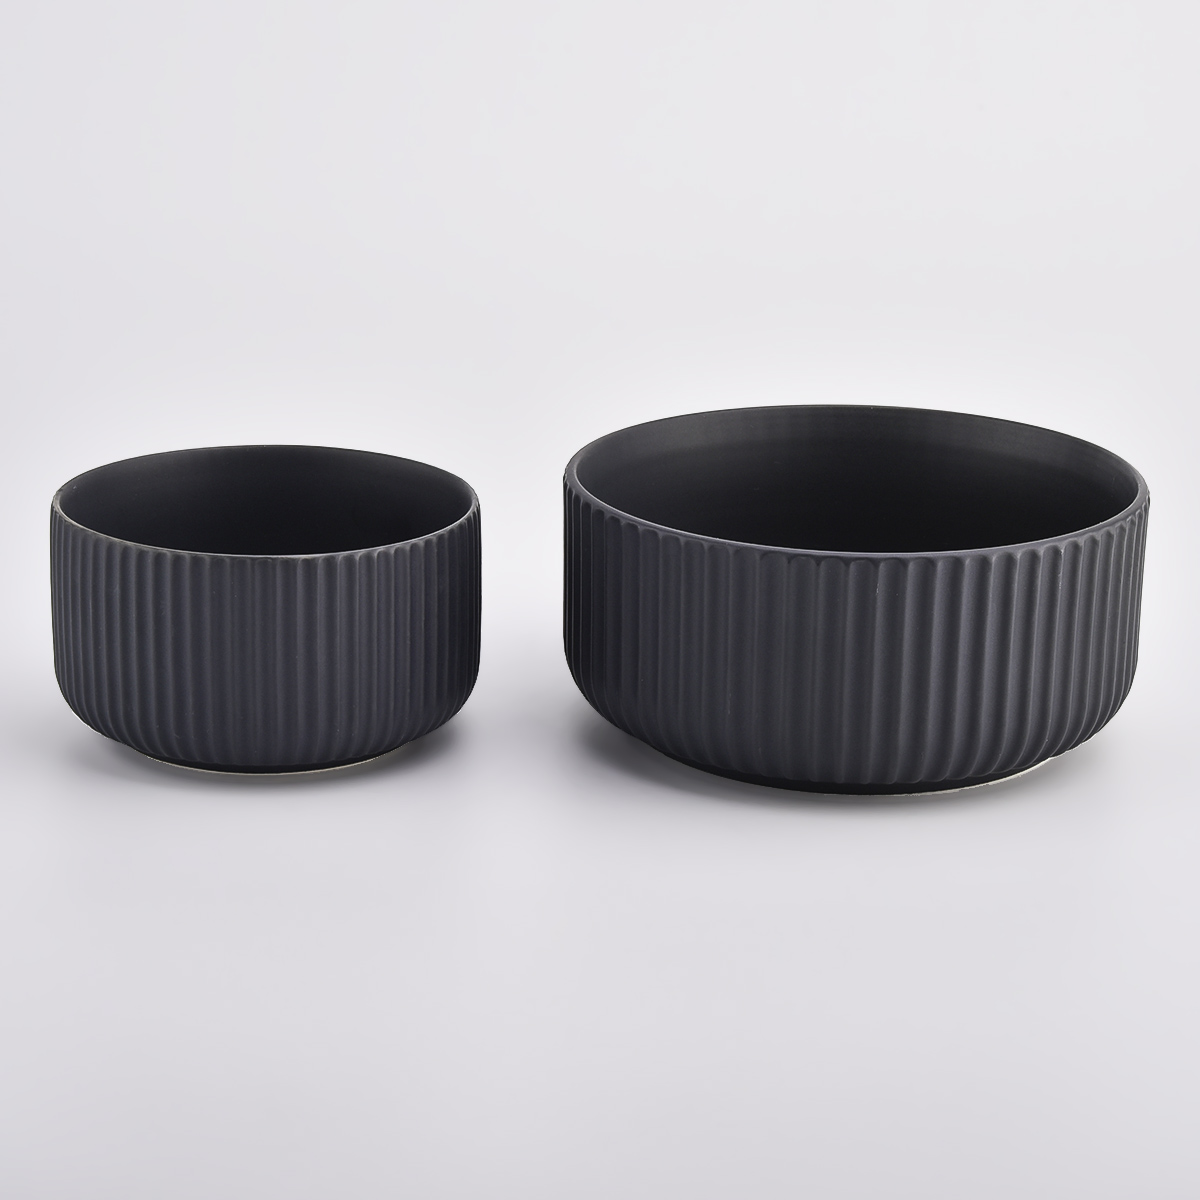 paski ceramiczne świecowe słoiki z koleżanką czarny kolor